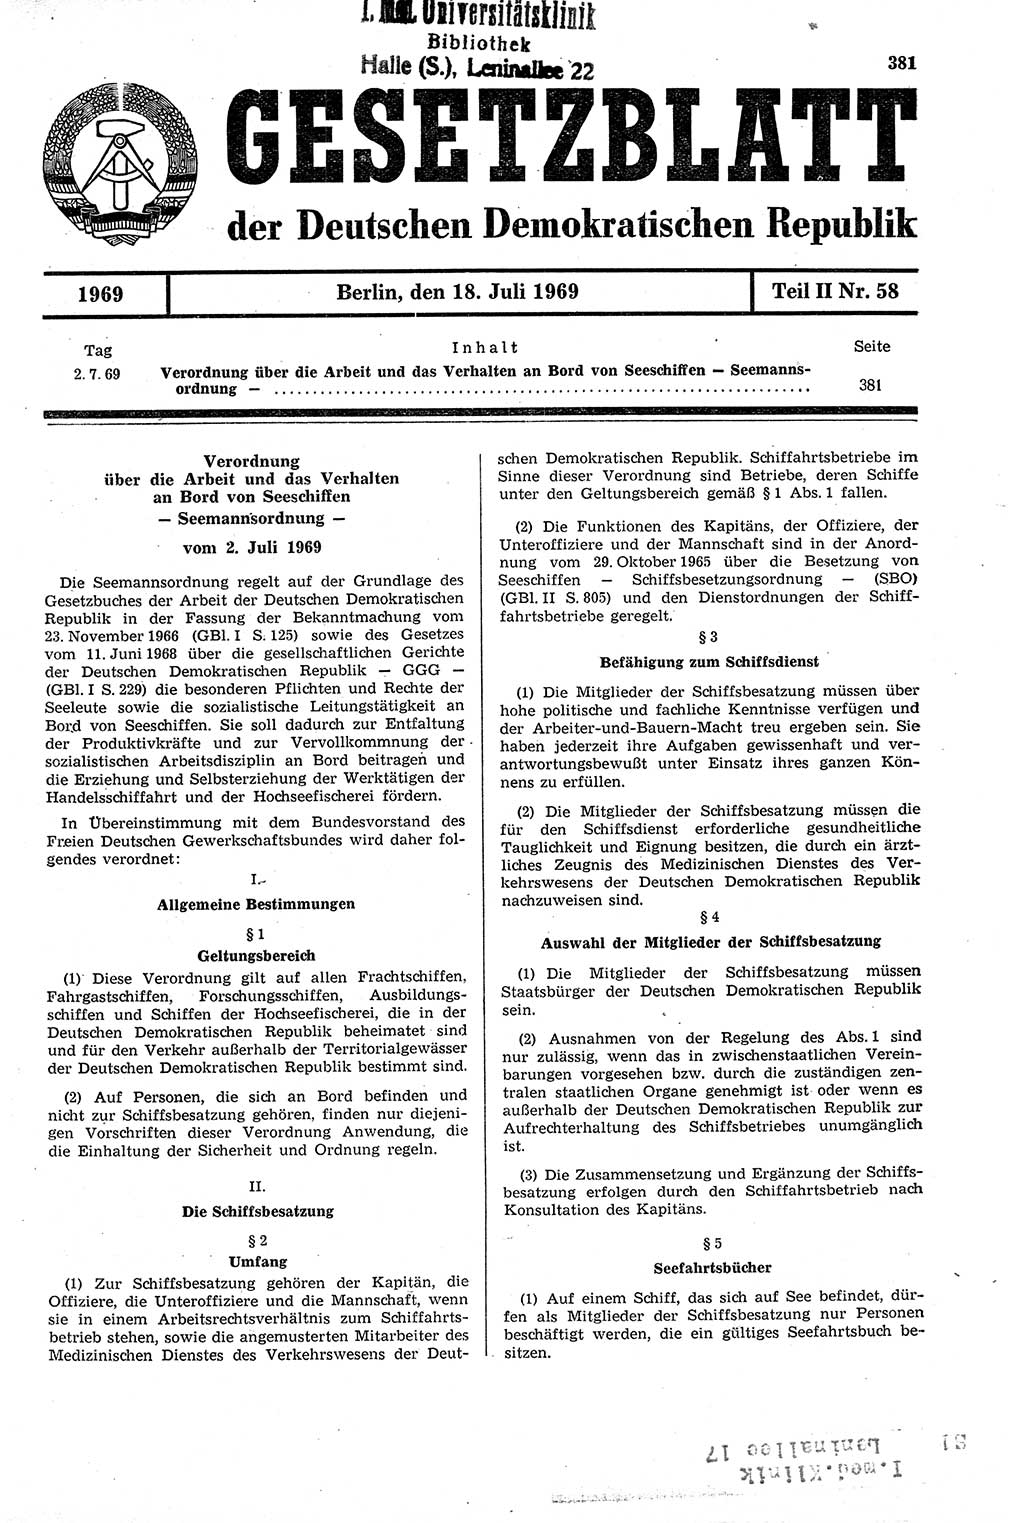 Gesetzblatt (GBl.) der Deutschen Demokratischen Republik (DDR) Teil ⅠⅠ 1969, Seite 381 (GBl. DDR ⅠⅠ 1969, S. 381)